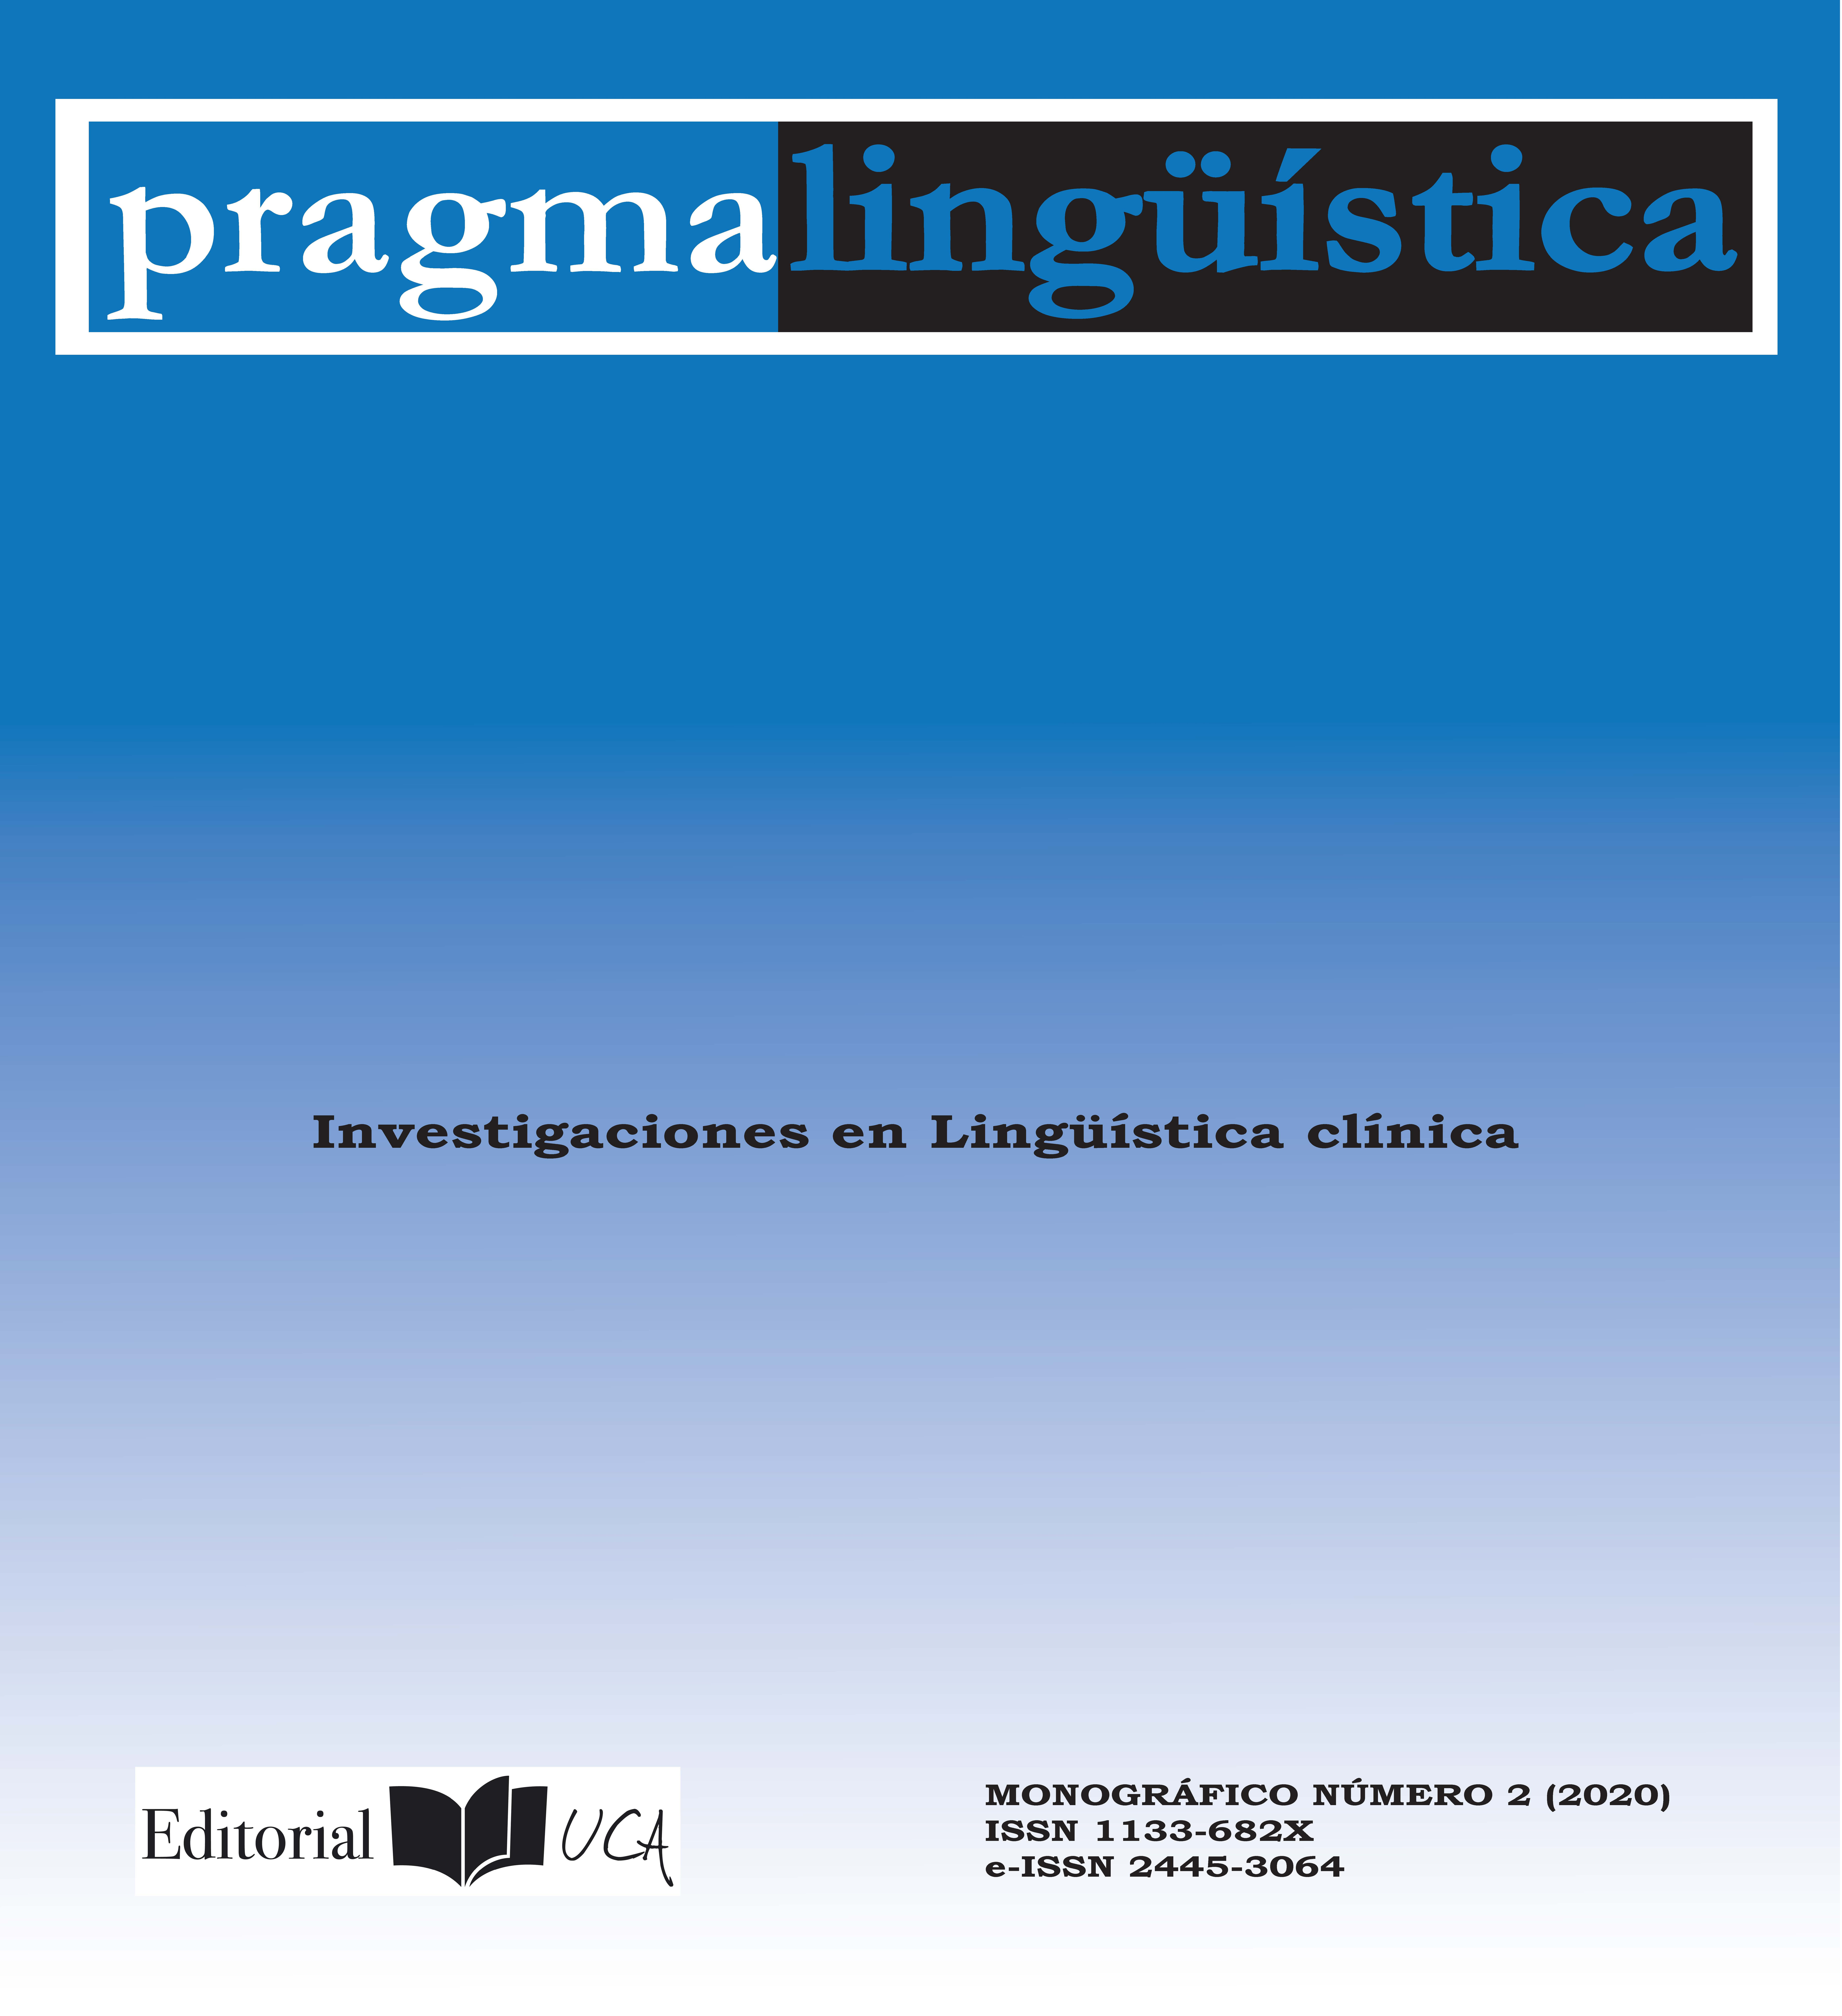 					Ver 2020: Monográfico 2. Investigaciones en lingüística clínica
				